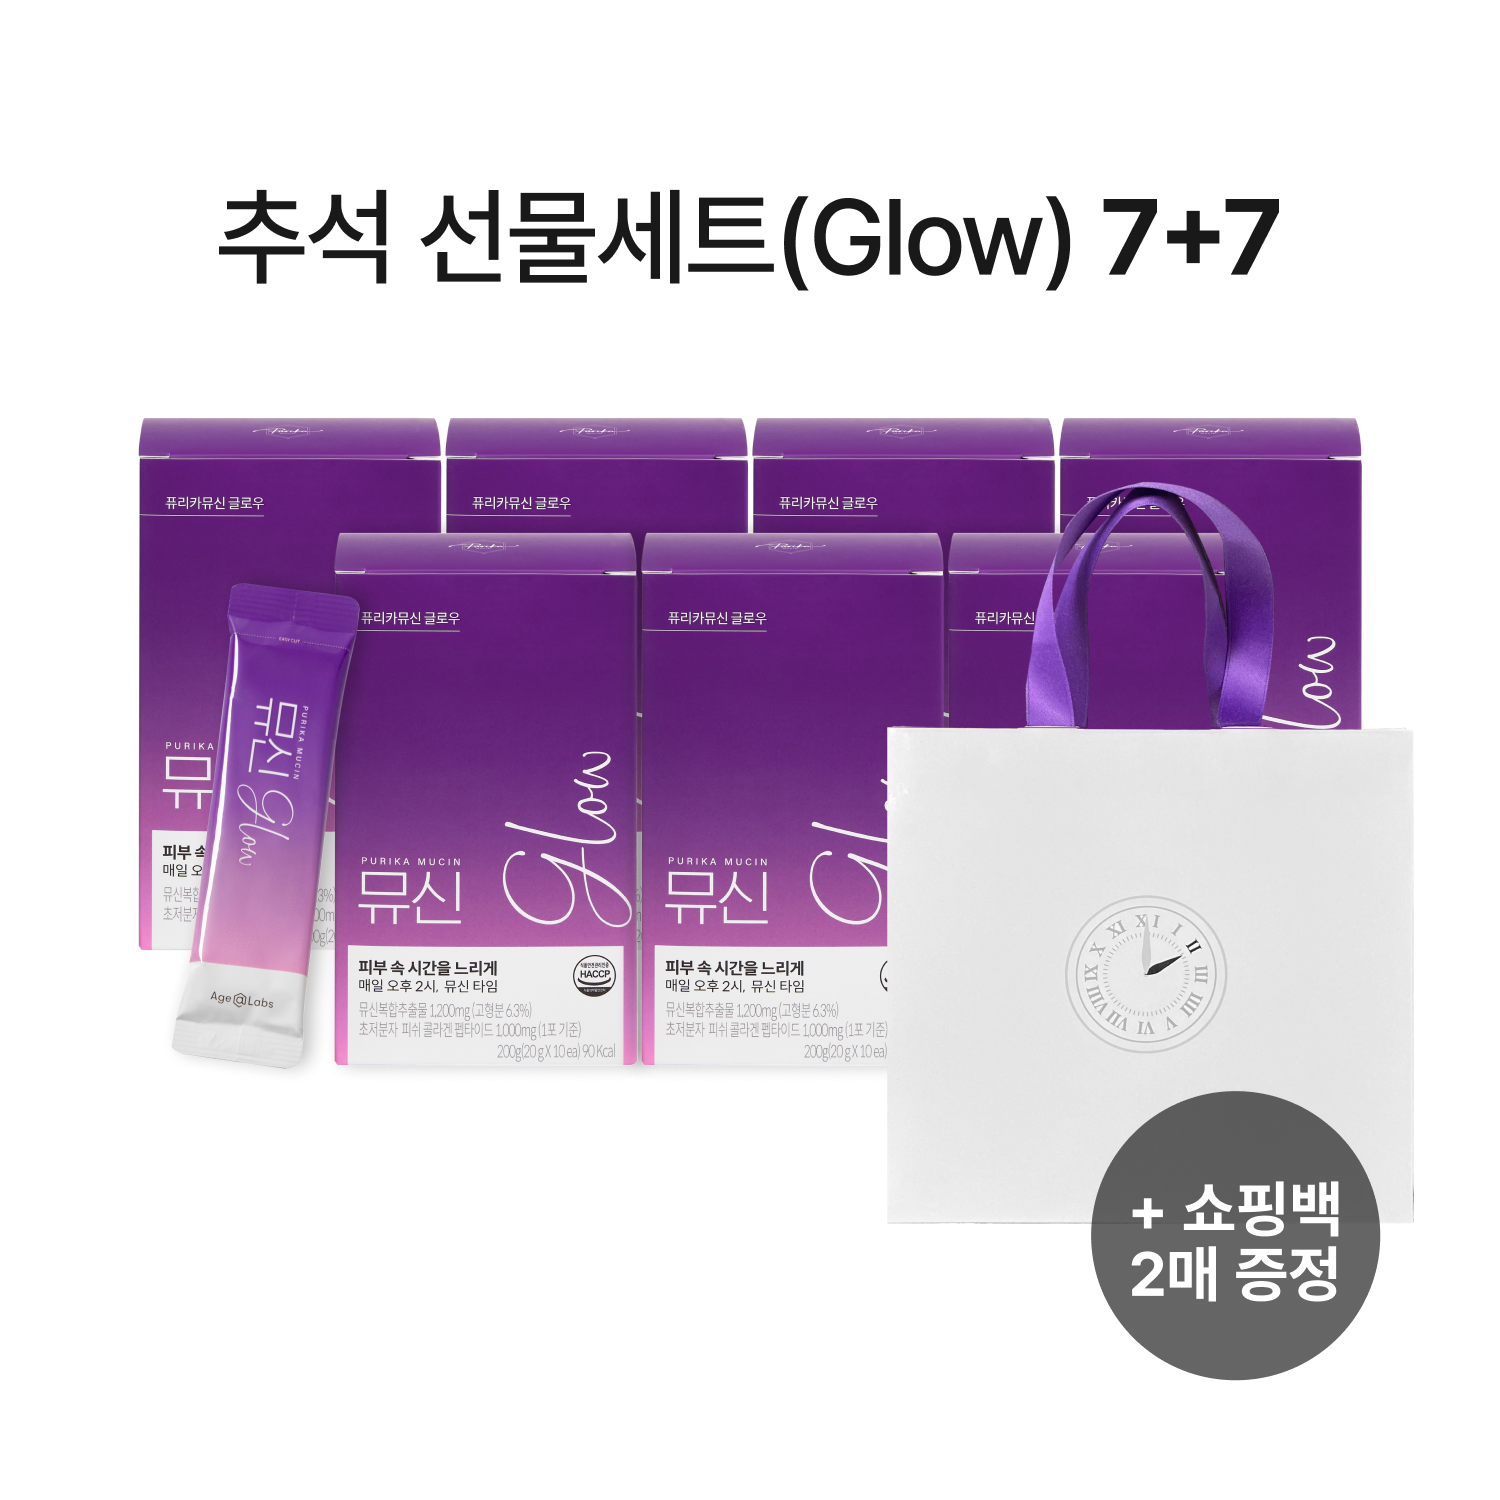 [기간한정] 뮤신 Glow 7+7 선물세트 (14box,140일) + 쇼핑백 무료증정(2개)